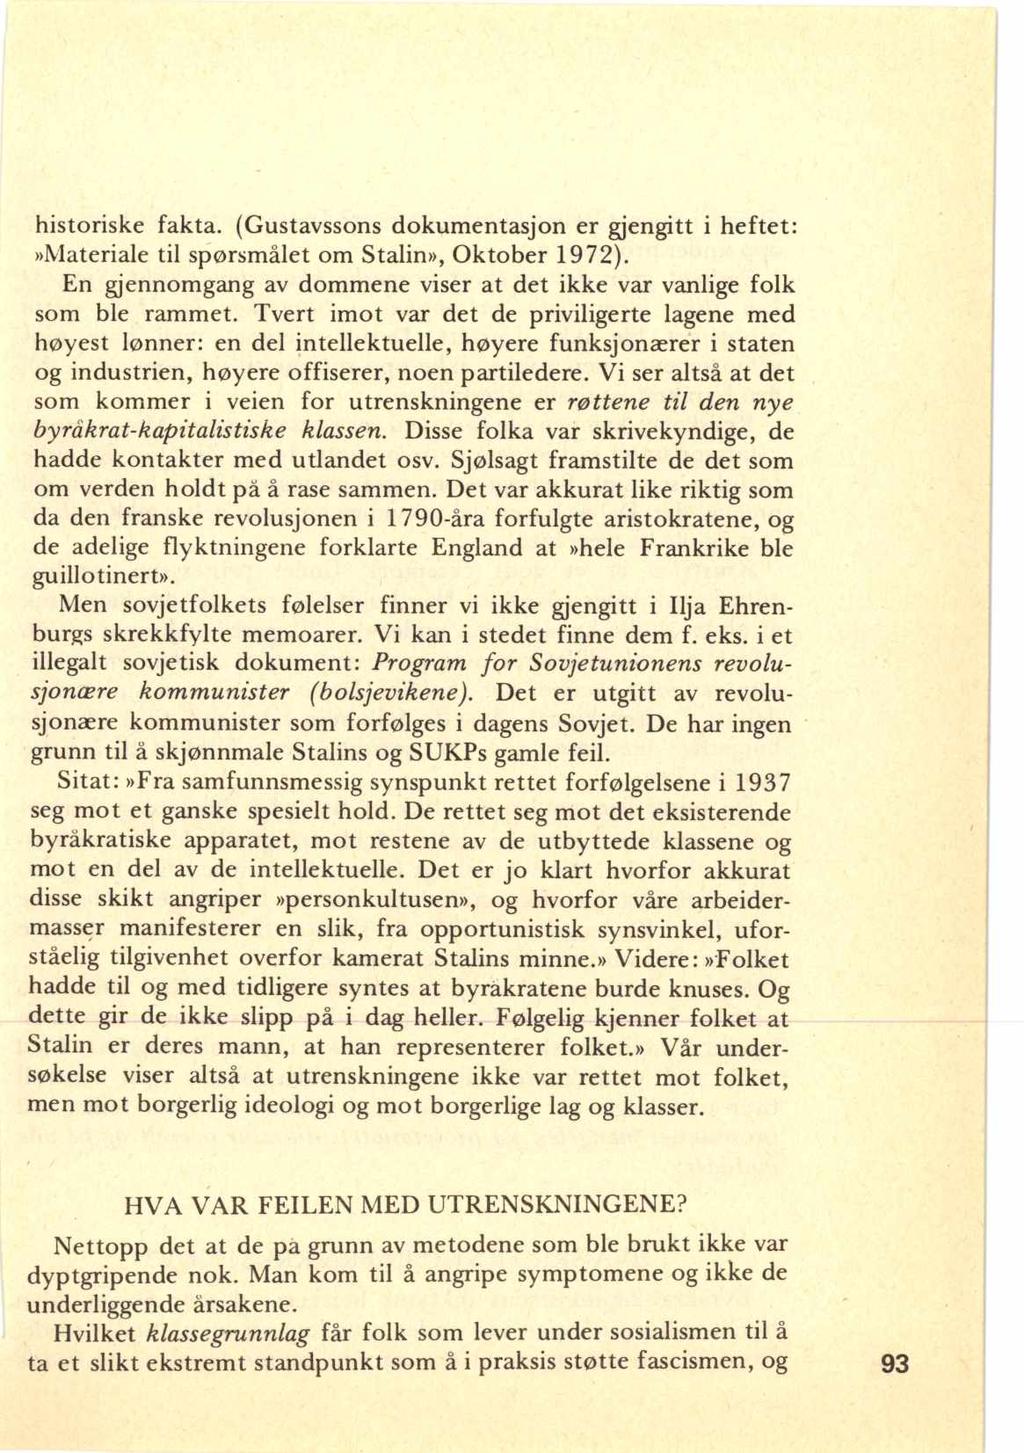 historiske fakta. (Gustavssons dokumentasjon er gjengitt i heftet:»materiale til spørsmålet om Stalin», Oktober 1972). En gjennomgang av dommene viser at det ikke var vanlige folk som ble rammet.